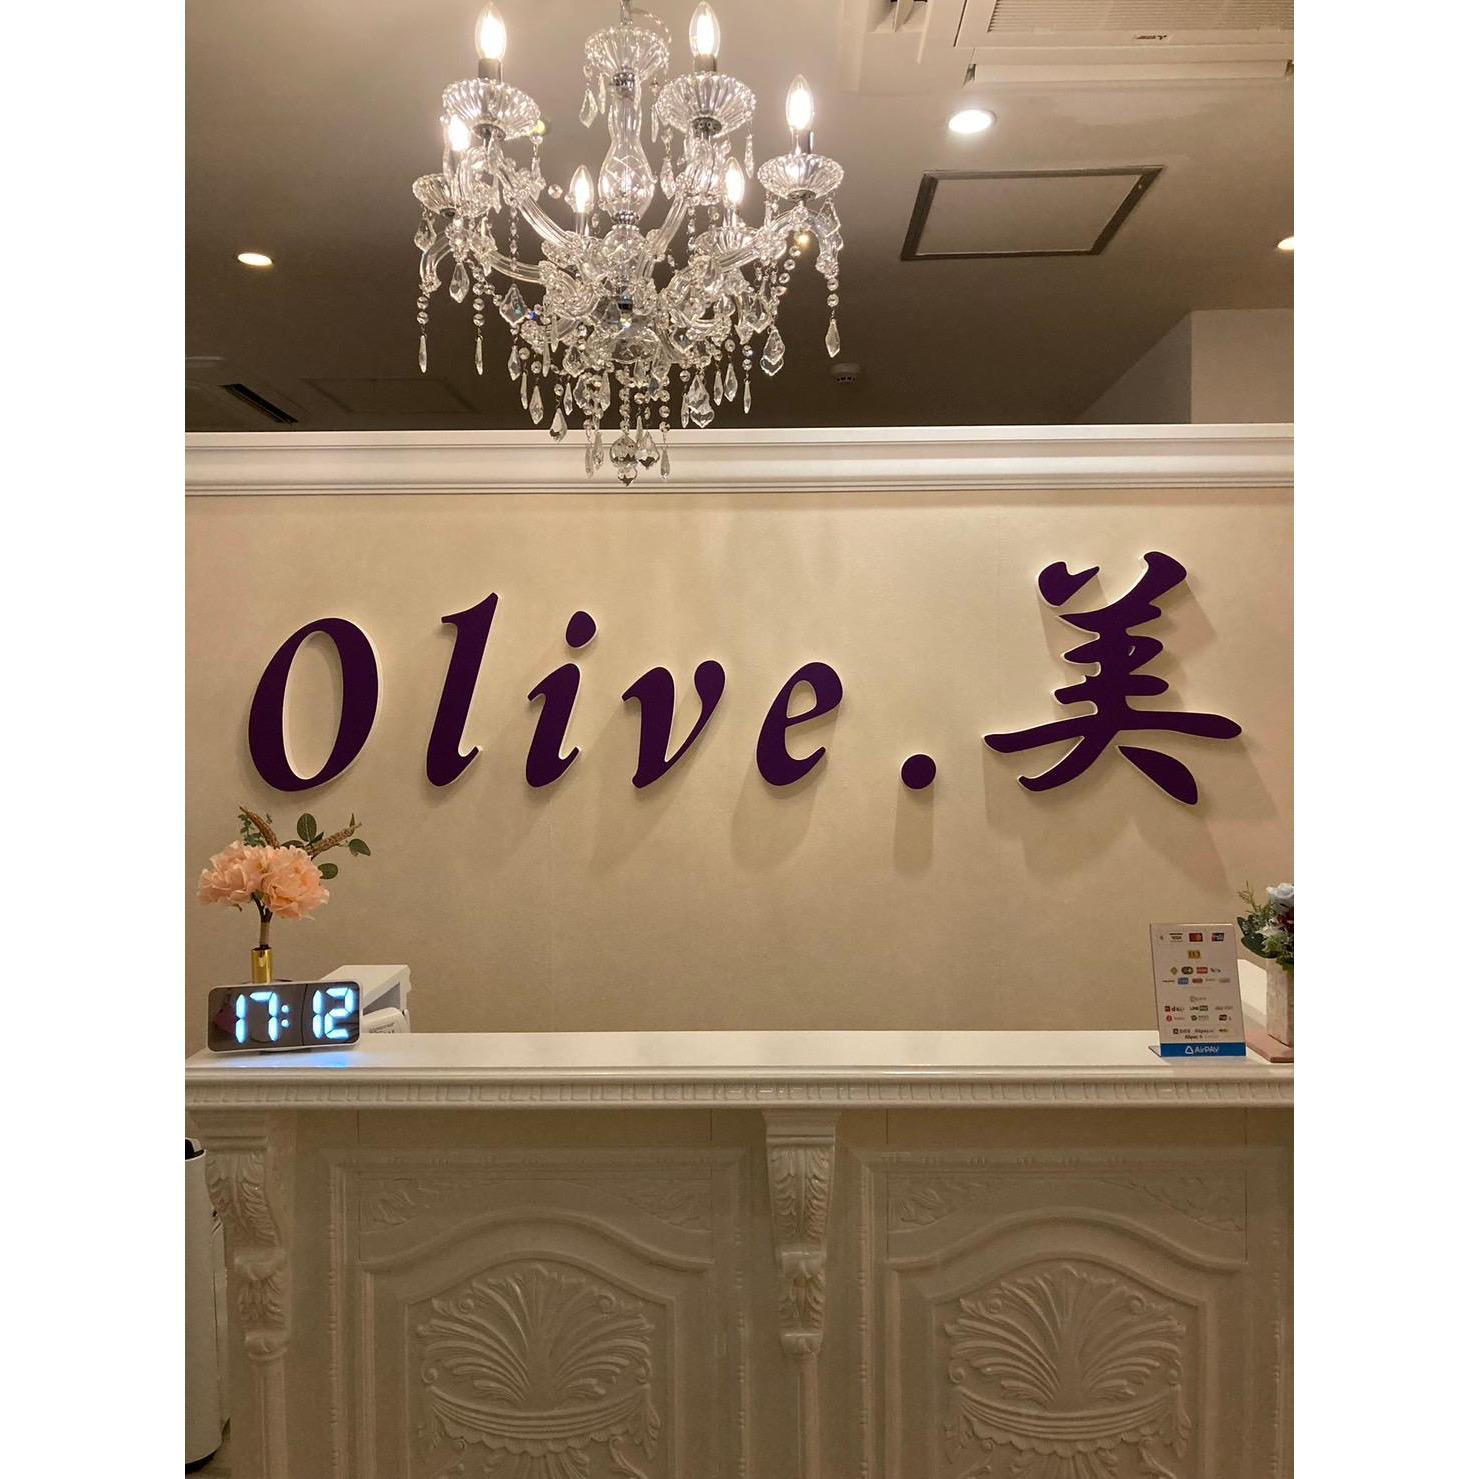 Olive.美 Logo